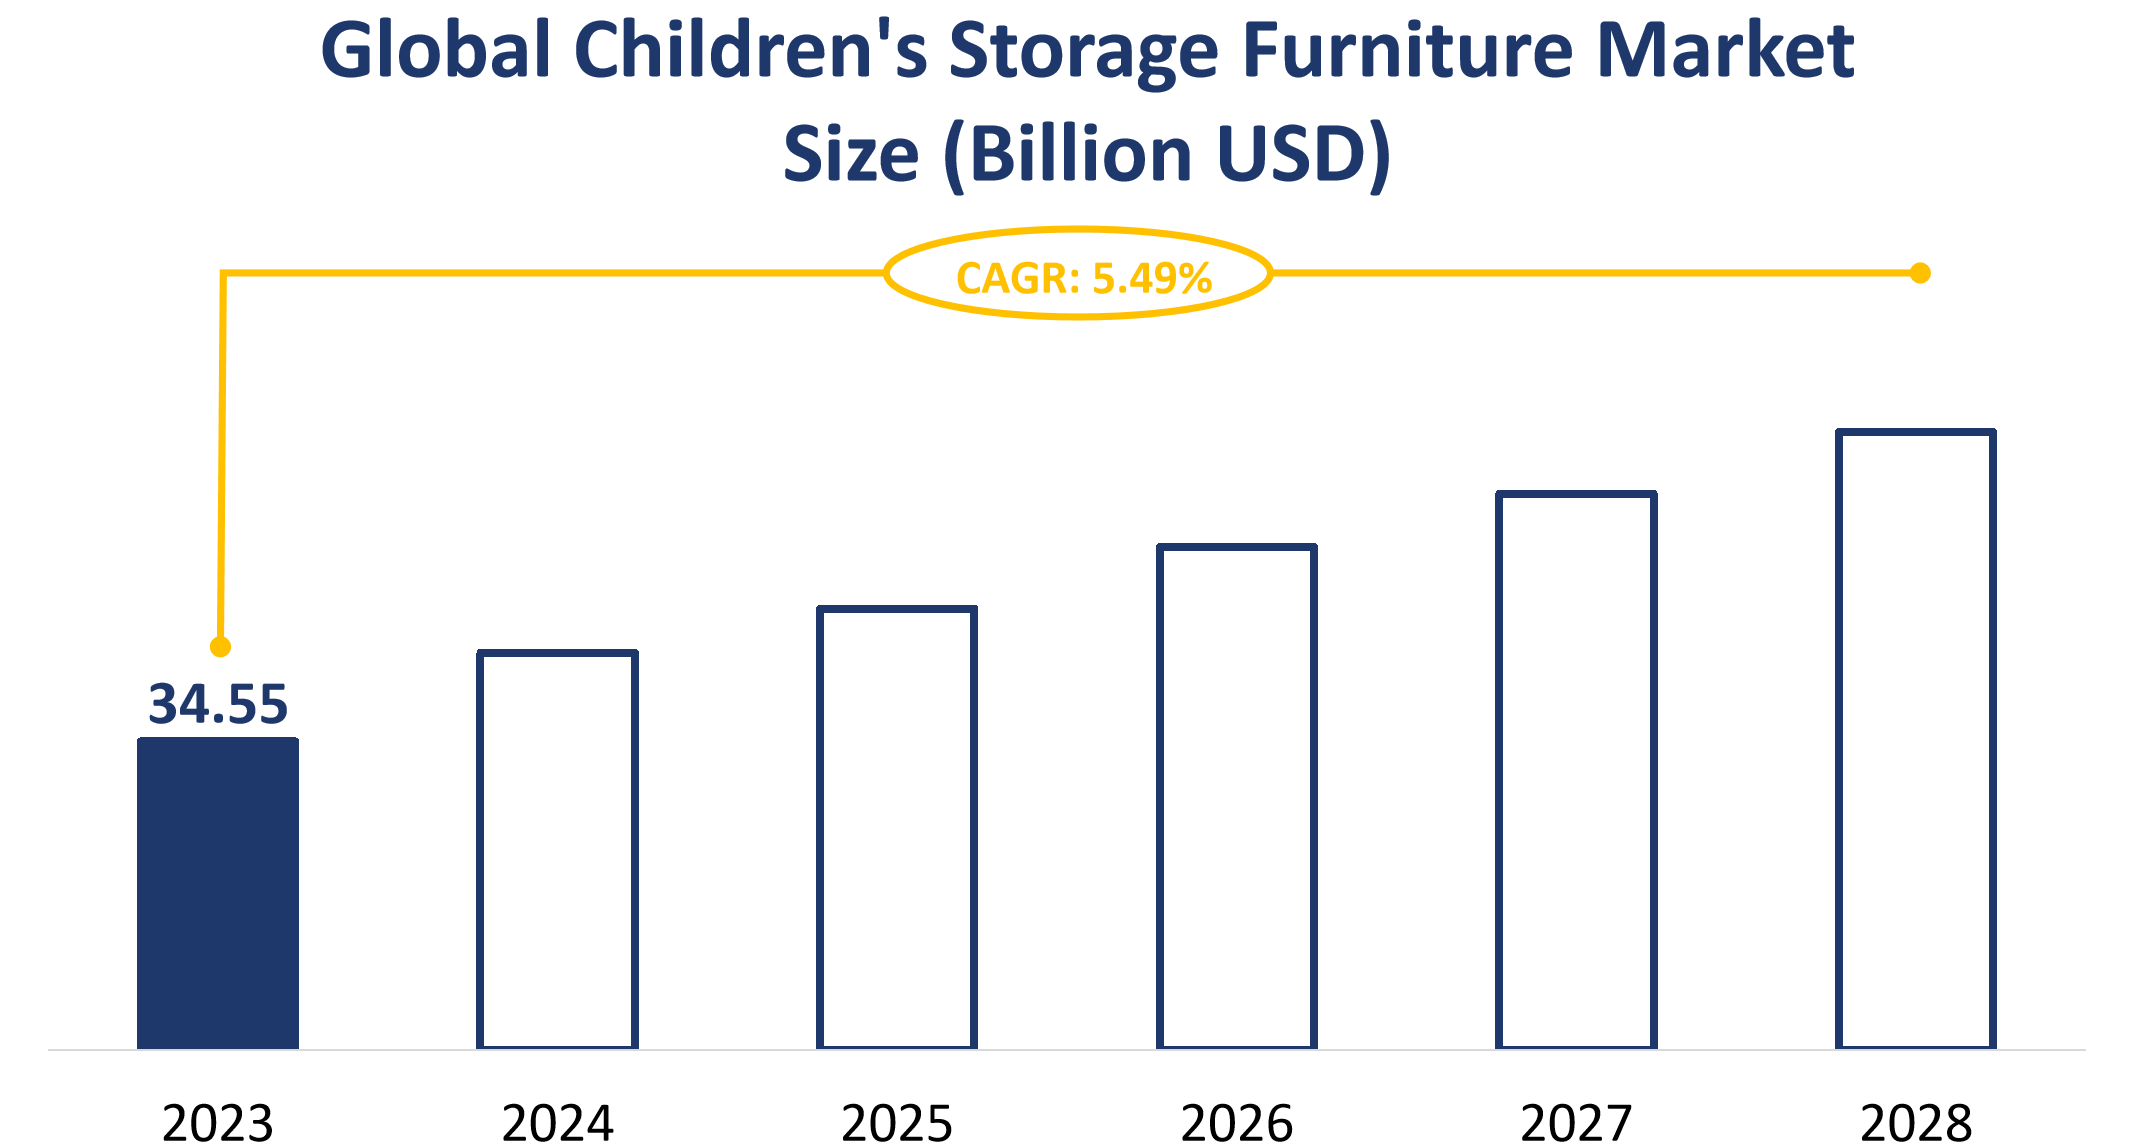 Global Children's Storage Furniture Market Size (Billion USD)